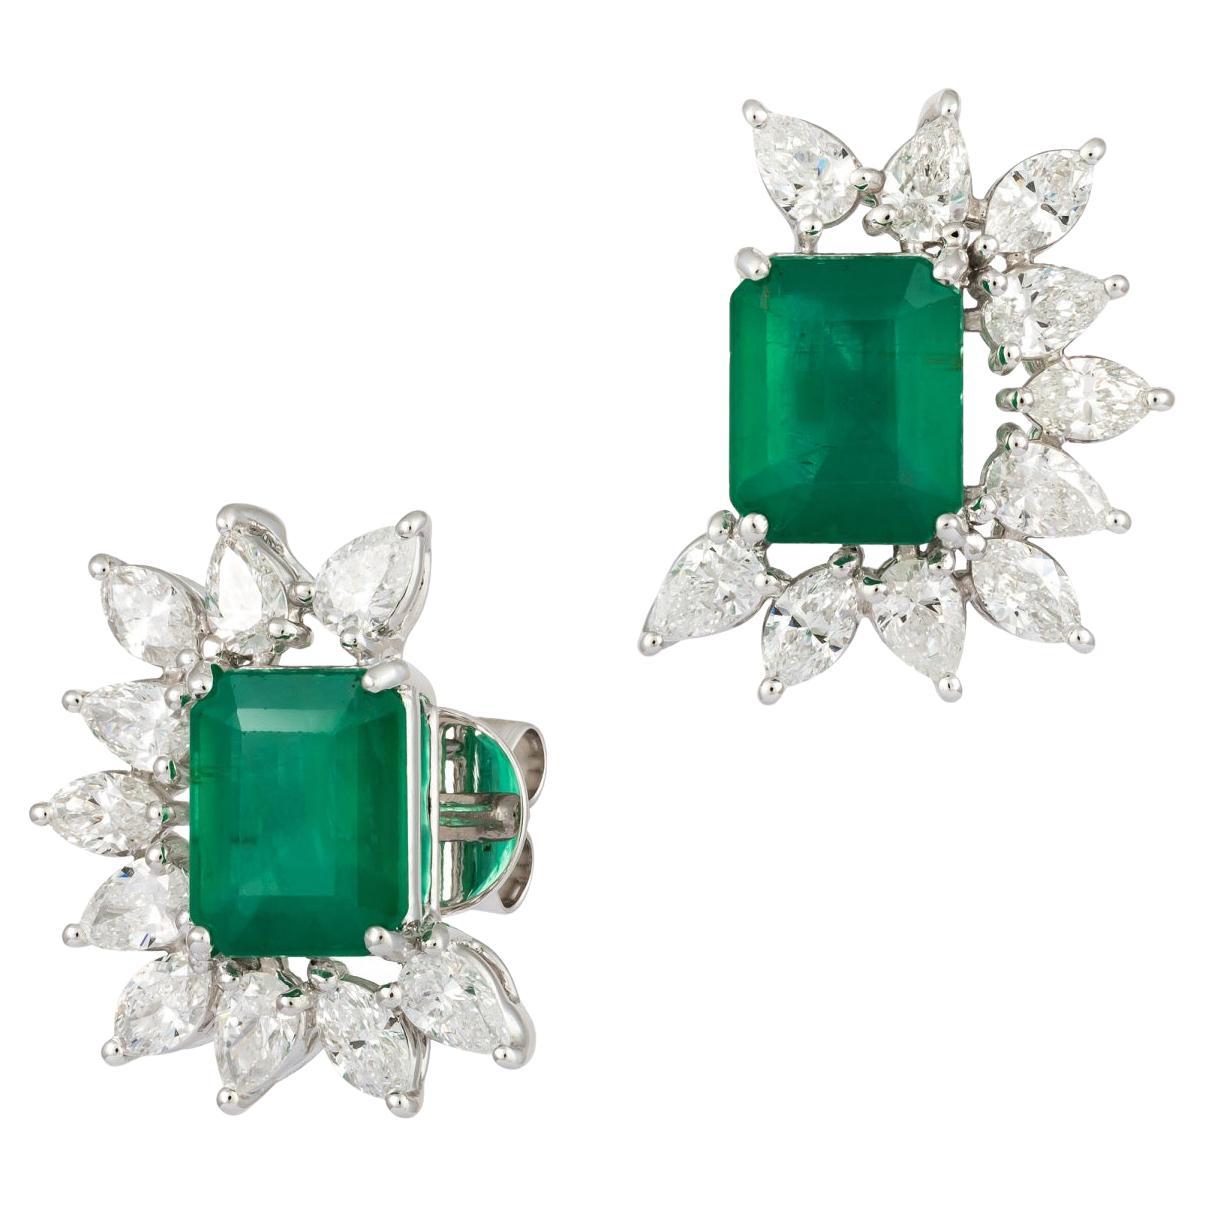 Original Emerald Diamond Elegant White 18K Gold Earrings Stud for Her For Sale